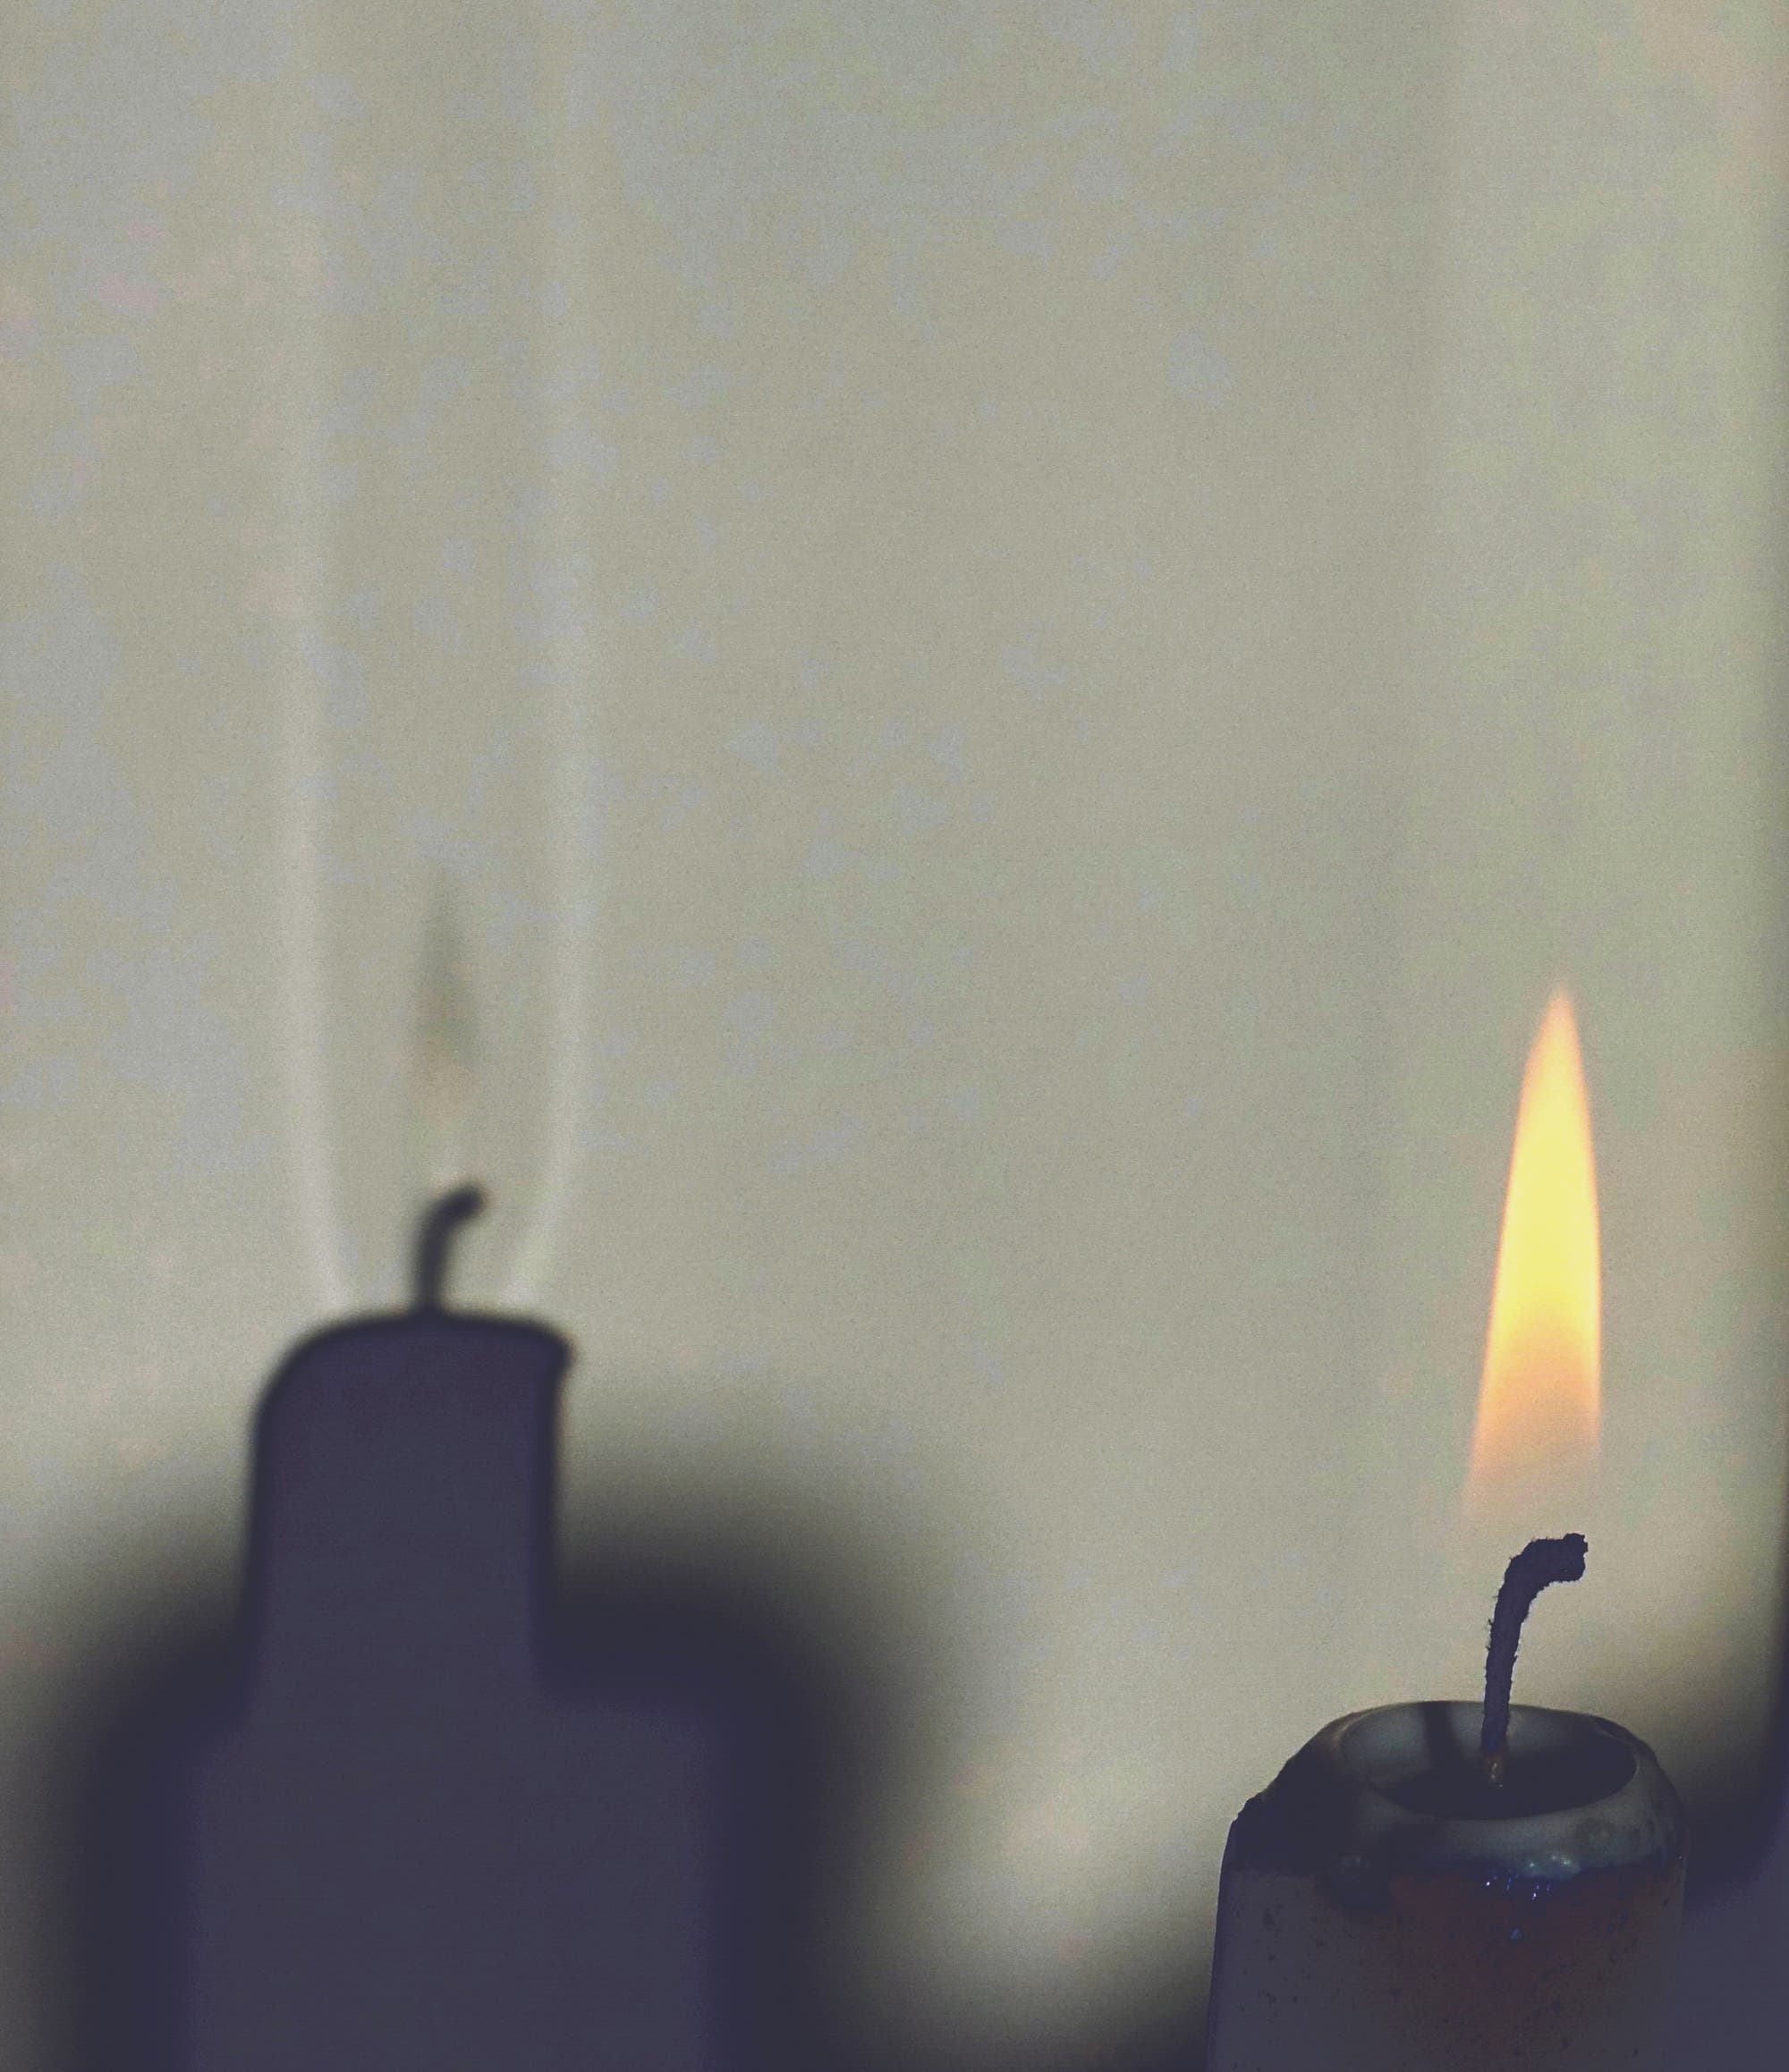 Eine brennende Kerze steht im Sonnenlicht. Auf der weißen Wand ist zu erkennen, dass der Schatten der Flamme von zwei senkrechten Lichtbändern eingerahmt wird. Oberhalb des Dochts ist ein ähnlich heller Fleck.